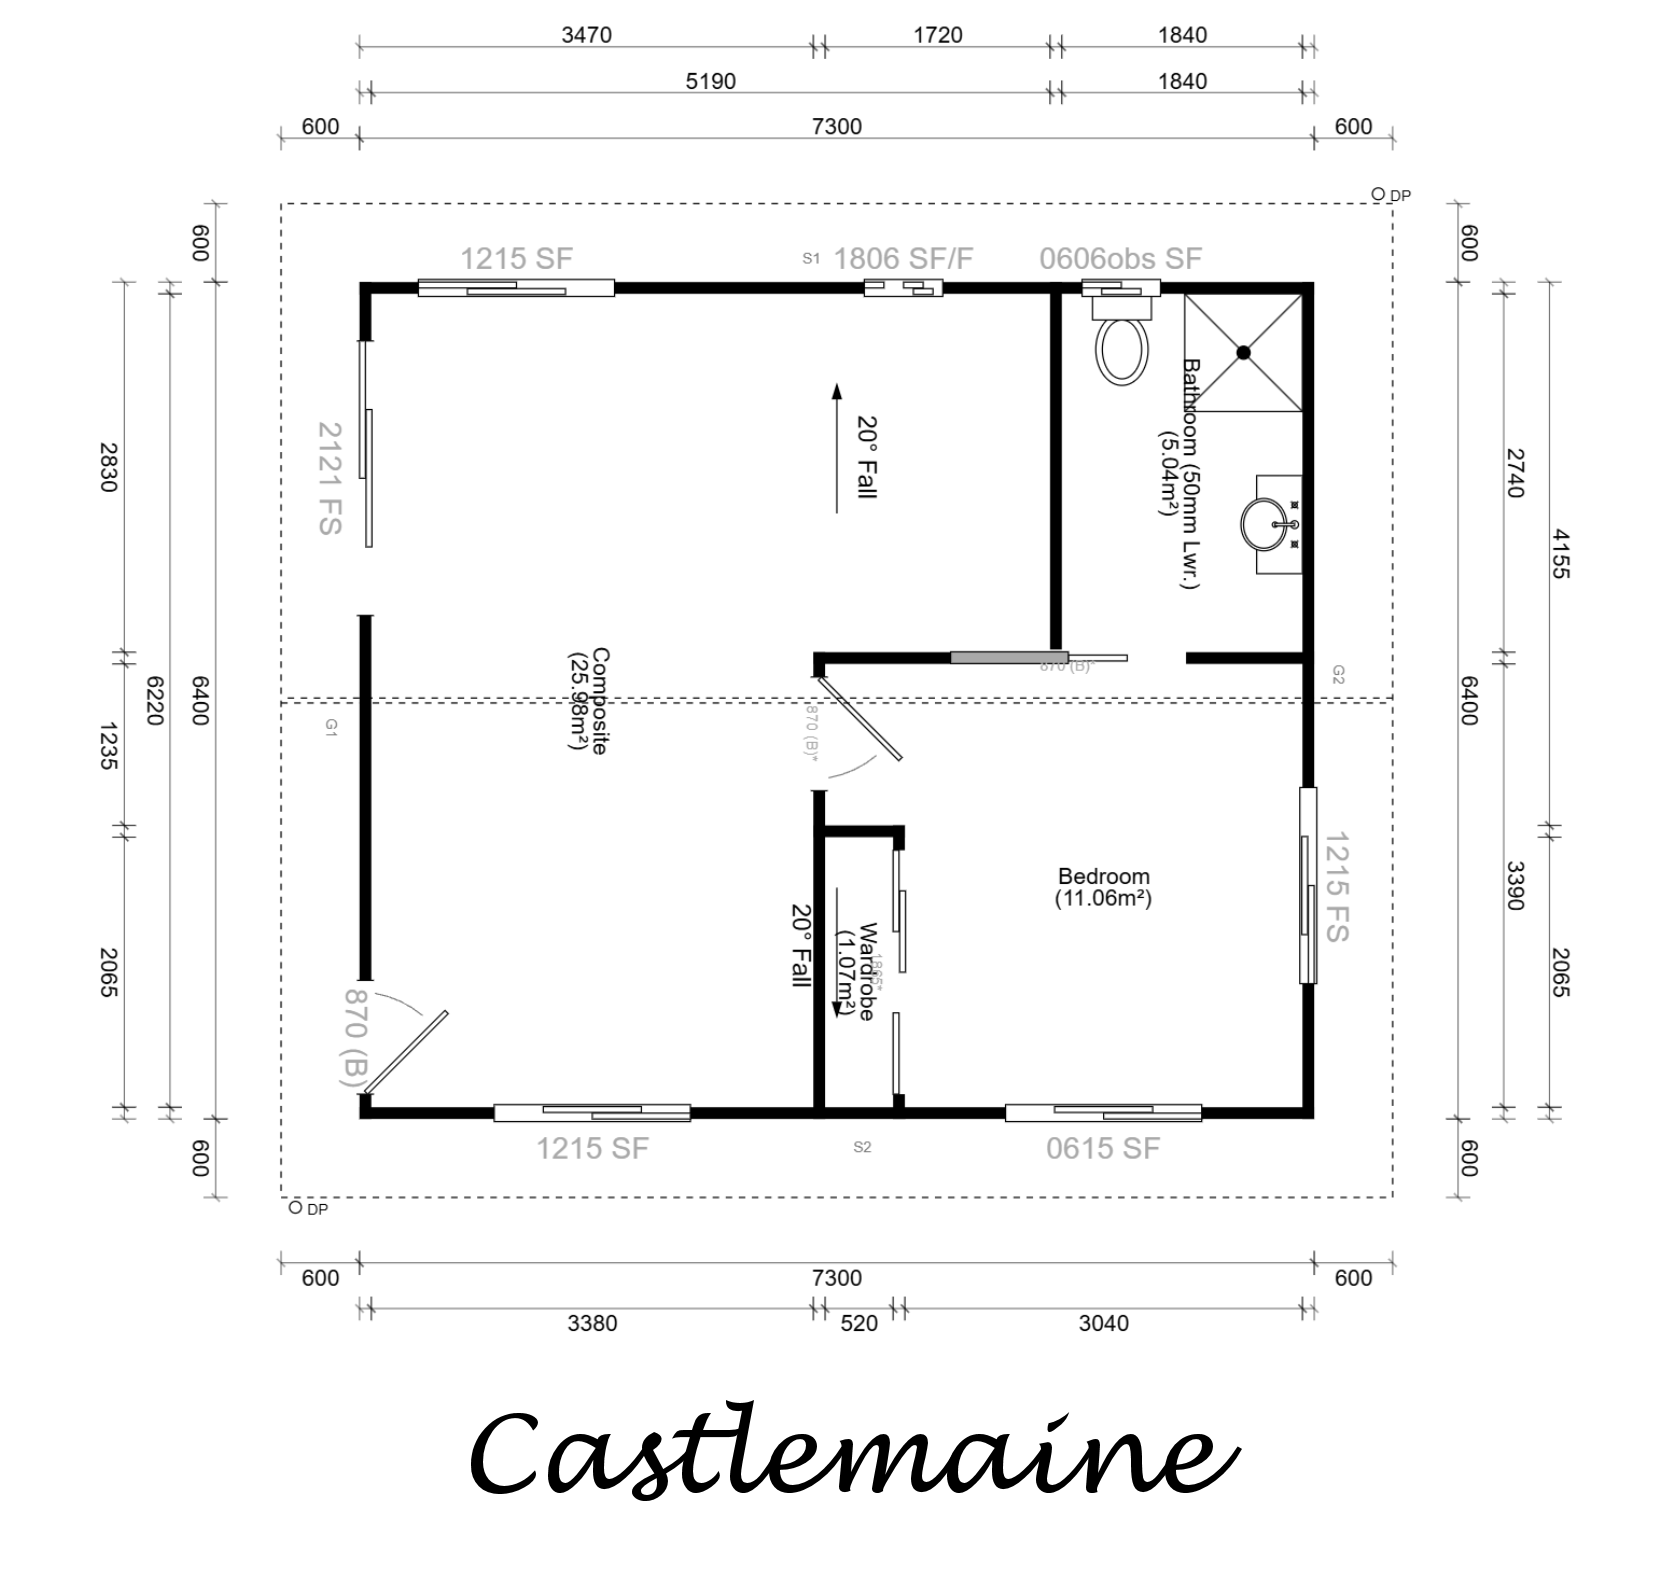 Castlemaine floorplan image